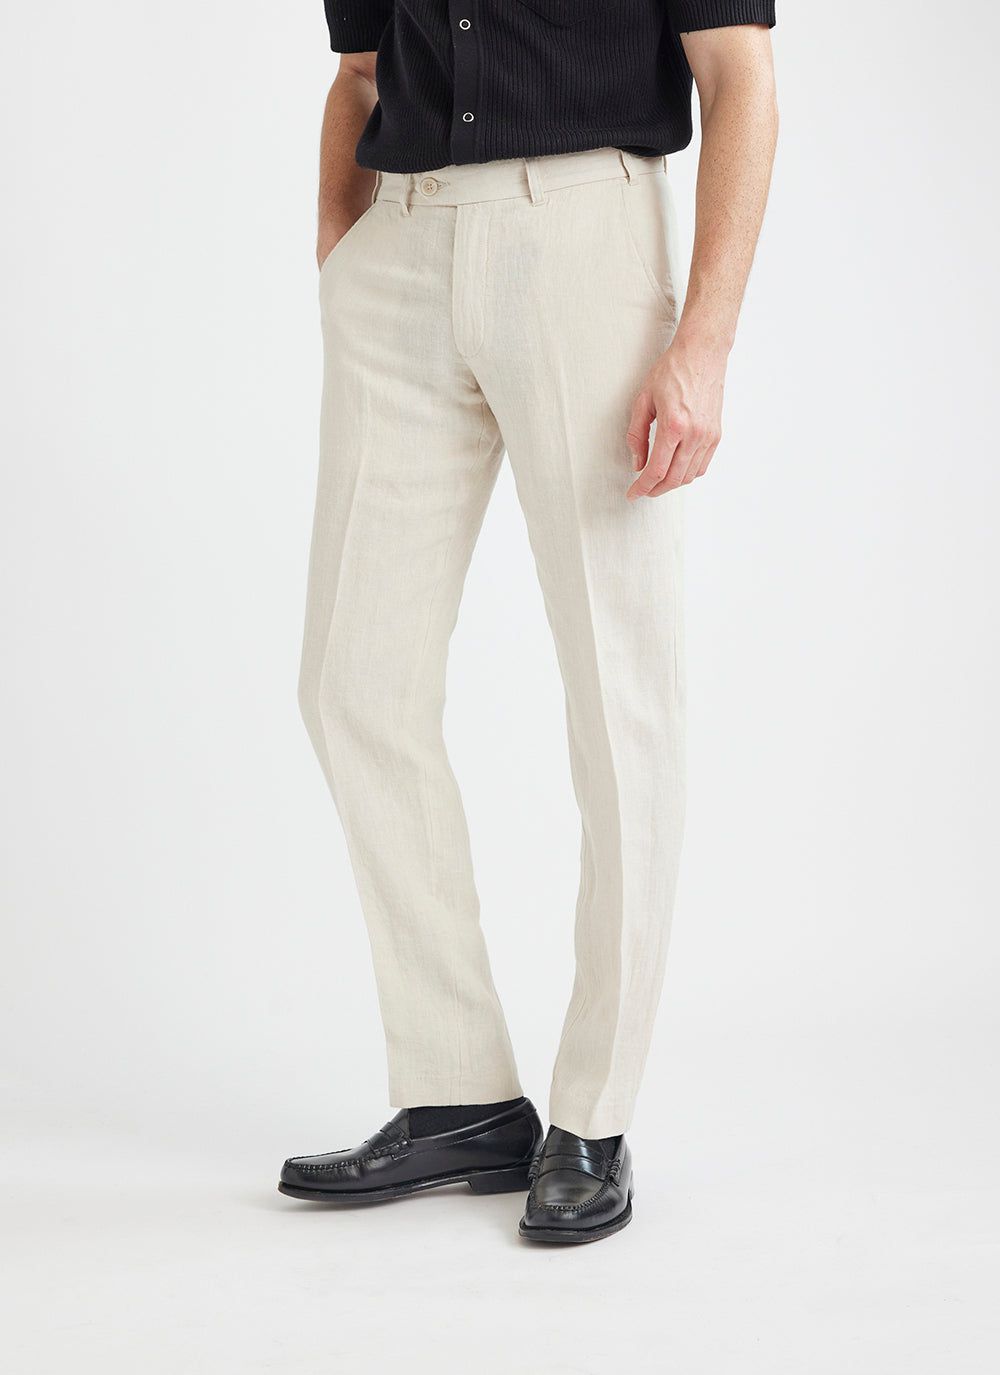 Men's Tailored Linen Suit Trousers | Natural Beige & Percival Menswear